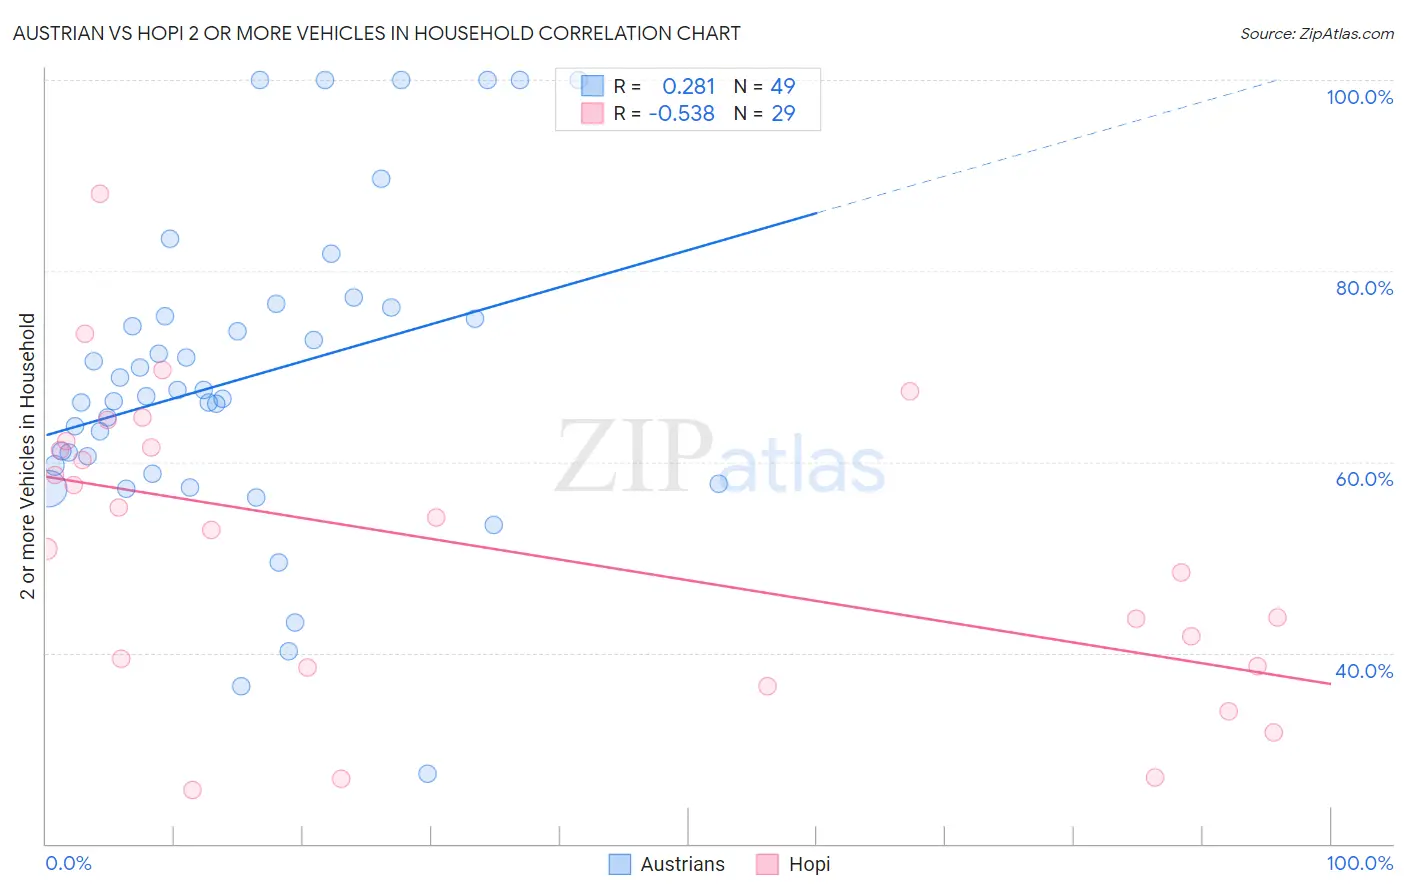 Austrian vs Hopi 2 or more Vehicles in Household